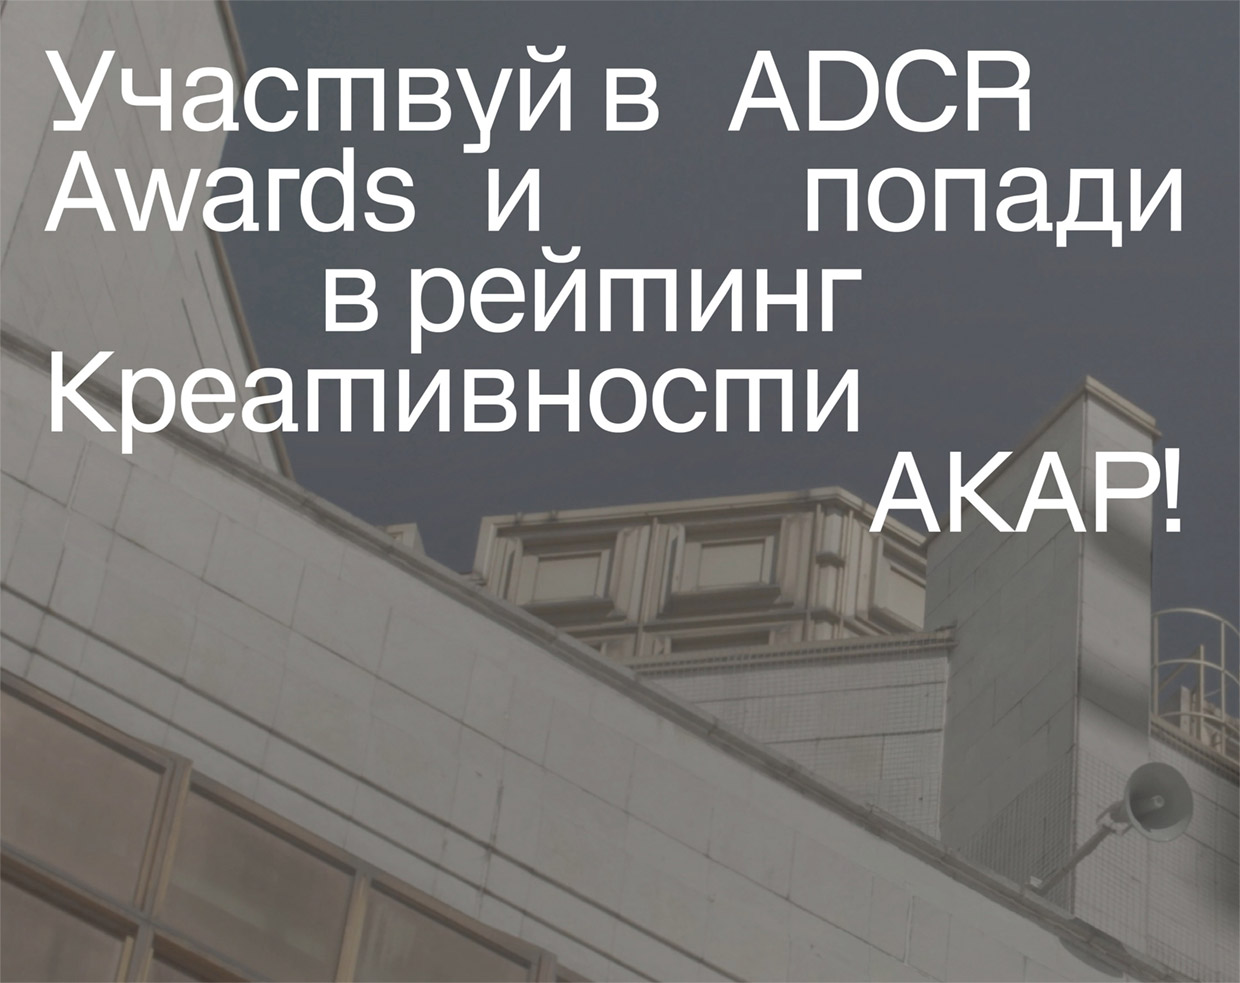 Старт нового конкурсного сезона	ADCR Awards, Москва